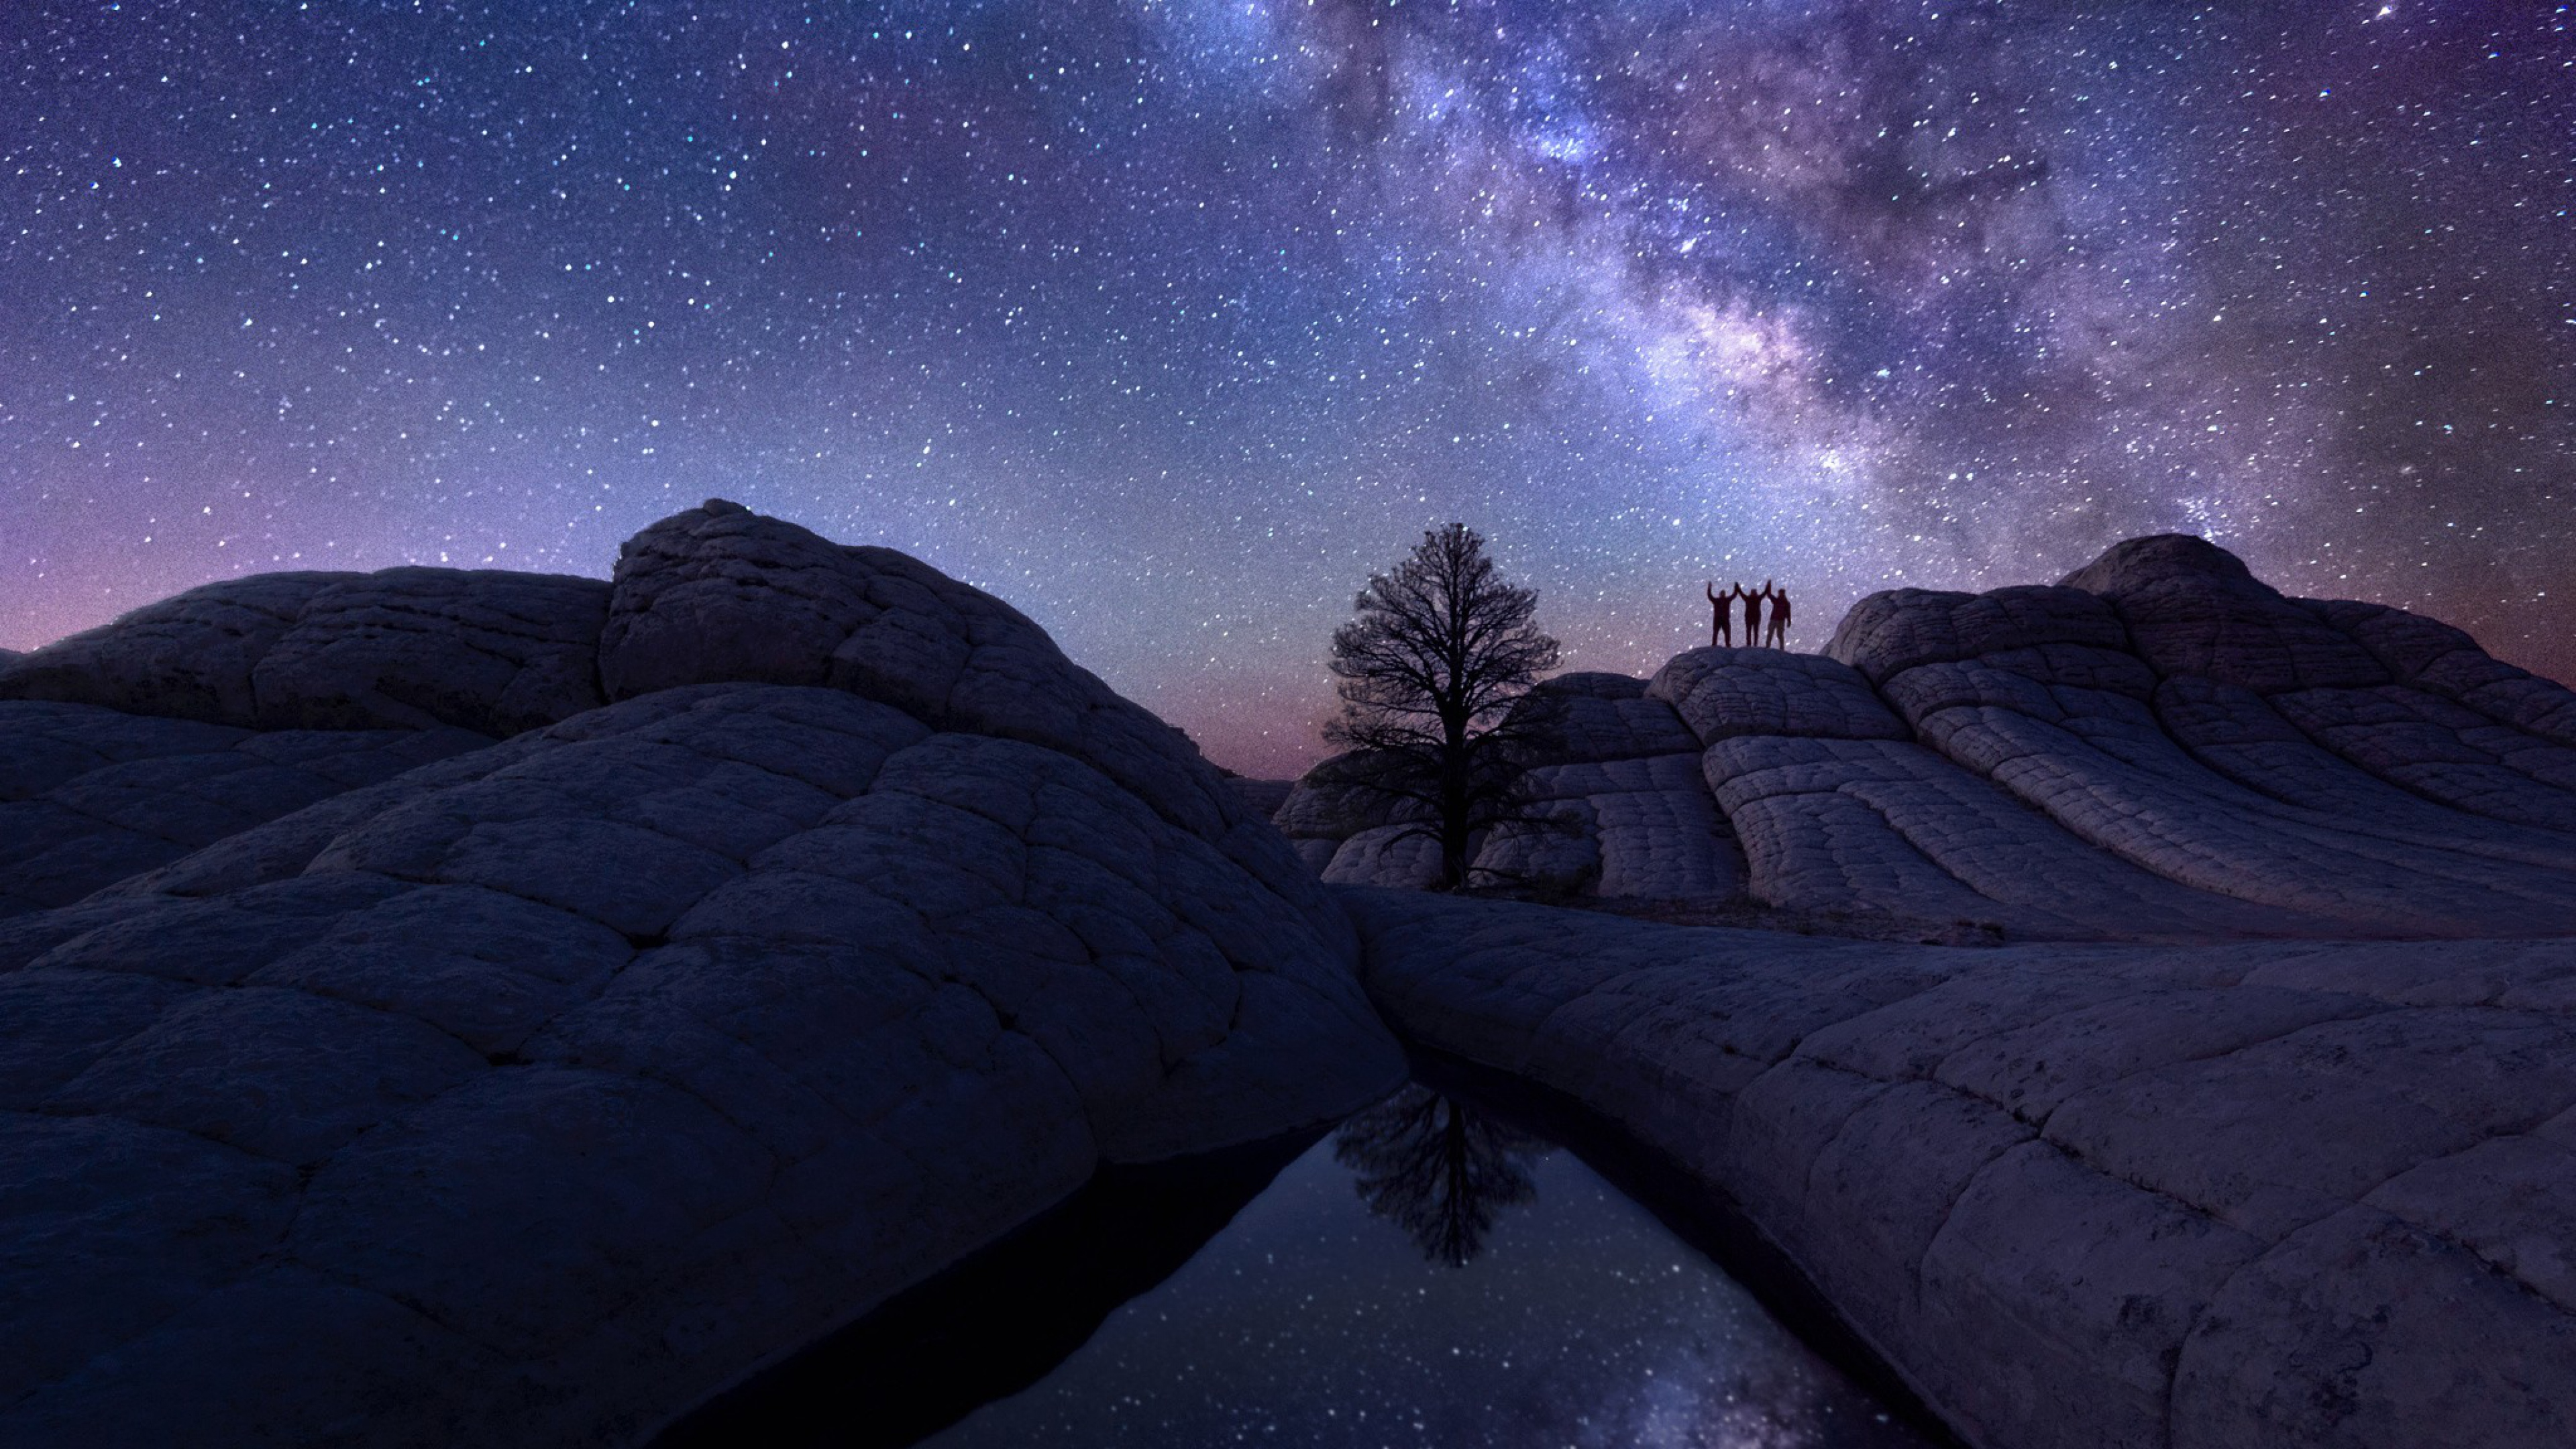  Milky Way  Astro Photography HD Digital Universe 4k  